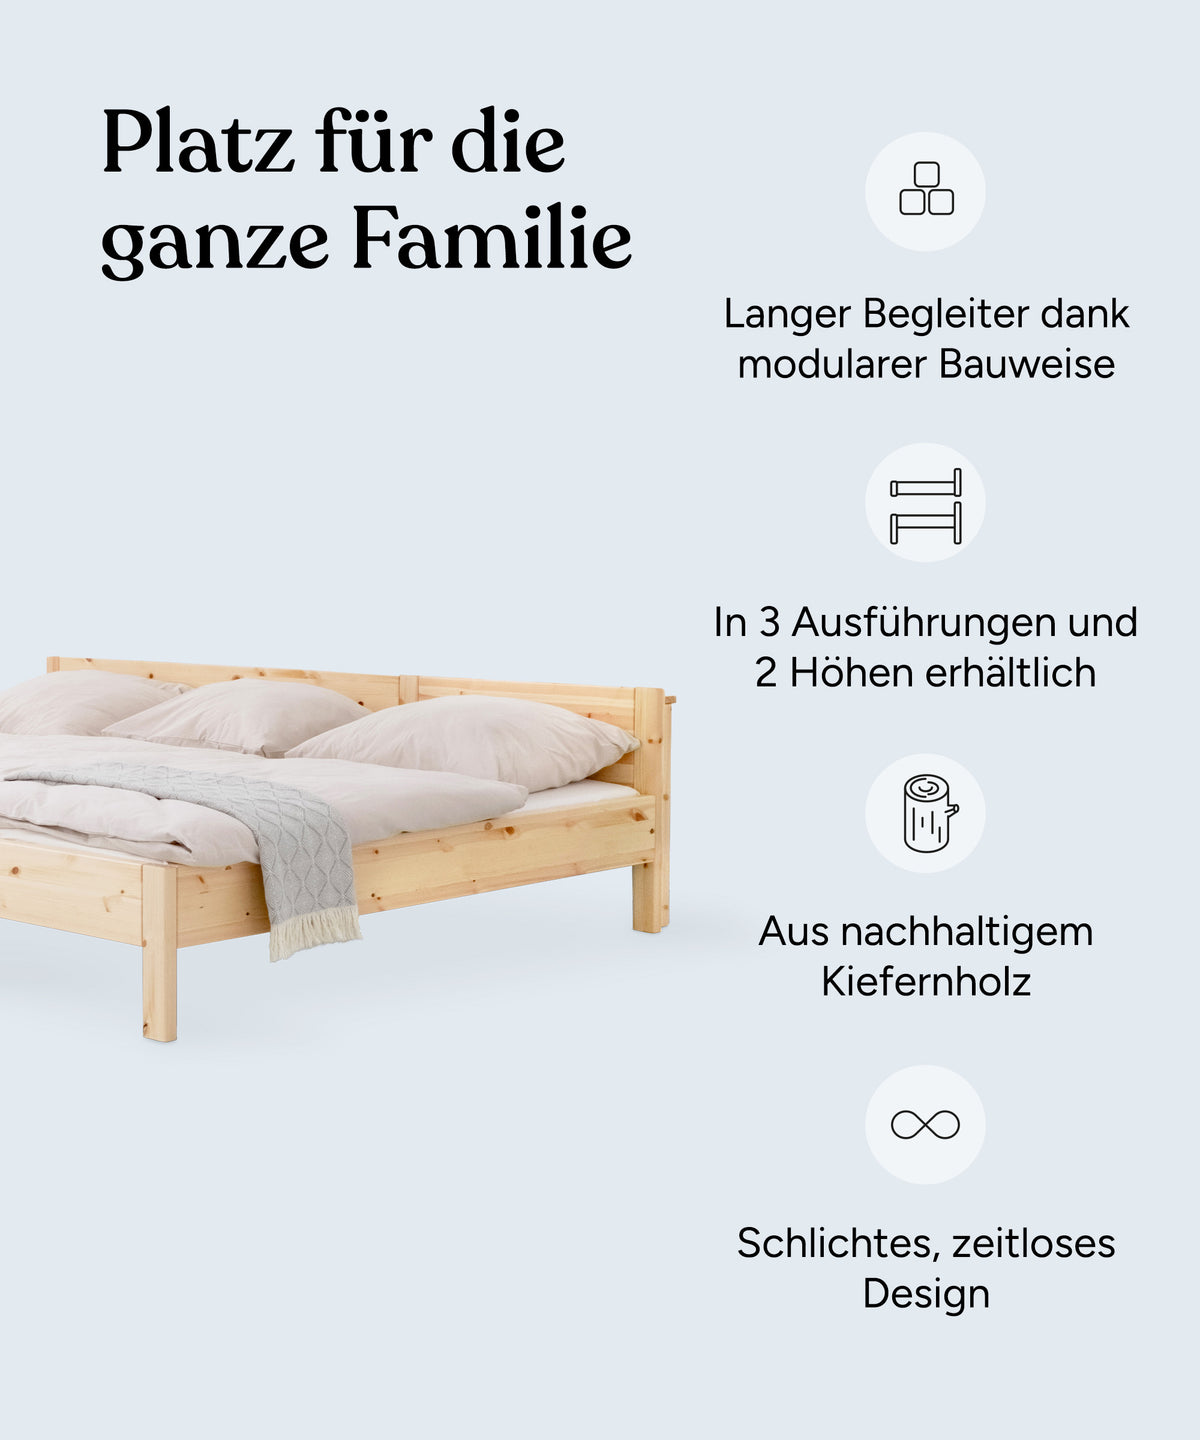 Vorteile Familienbett: Langer Begleiter dank modularer Bauweise, in zwei Farben und zwei Höhen erhältlich, aus nachhaltigem Kiefernholz, schlichtes und zeitloses Design.